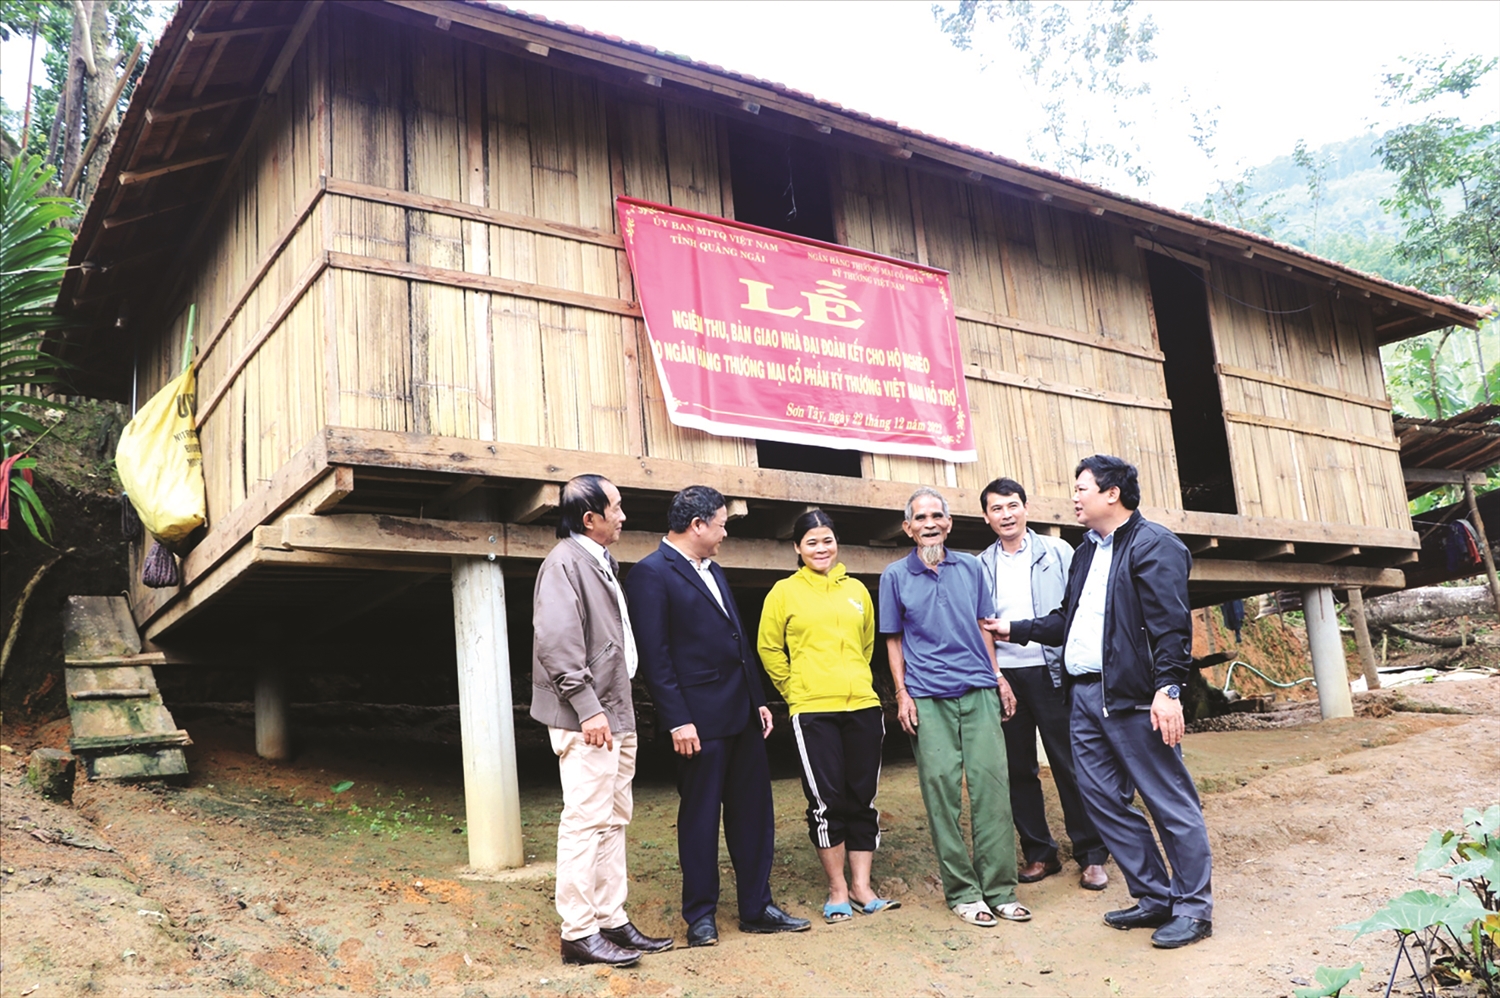  Huyện Sơn Tây luôn quan tâm hỗ trợ xây dựng nhà ở kiên cố để người nghèo được an cư.